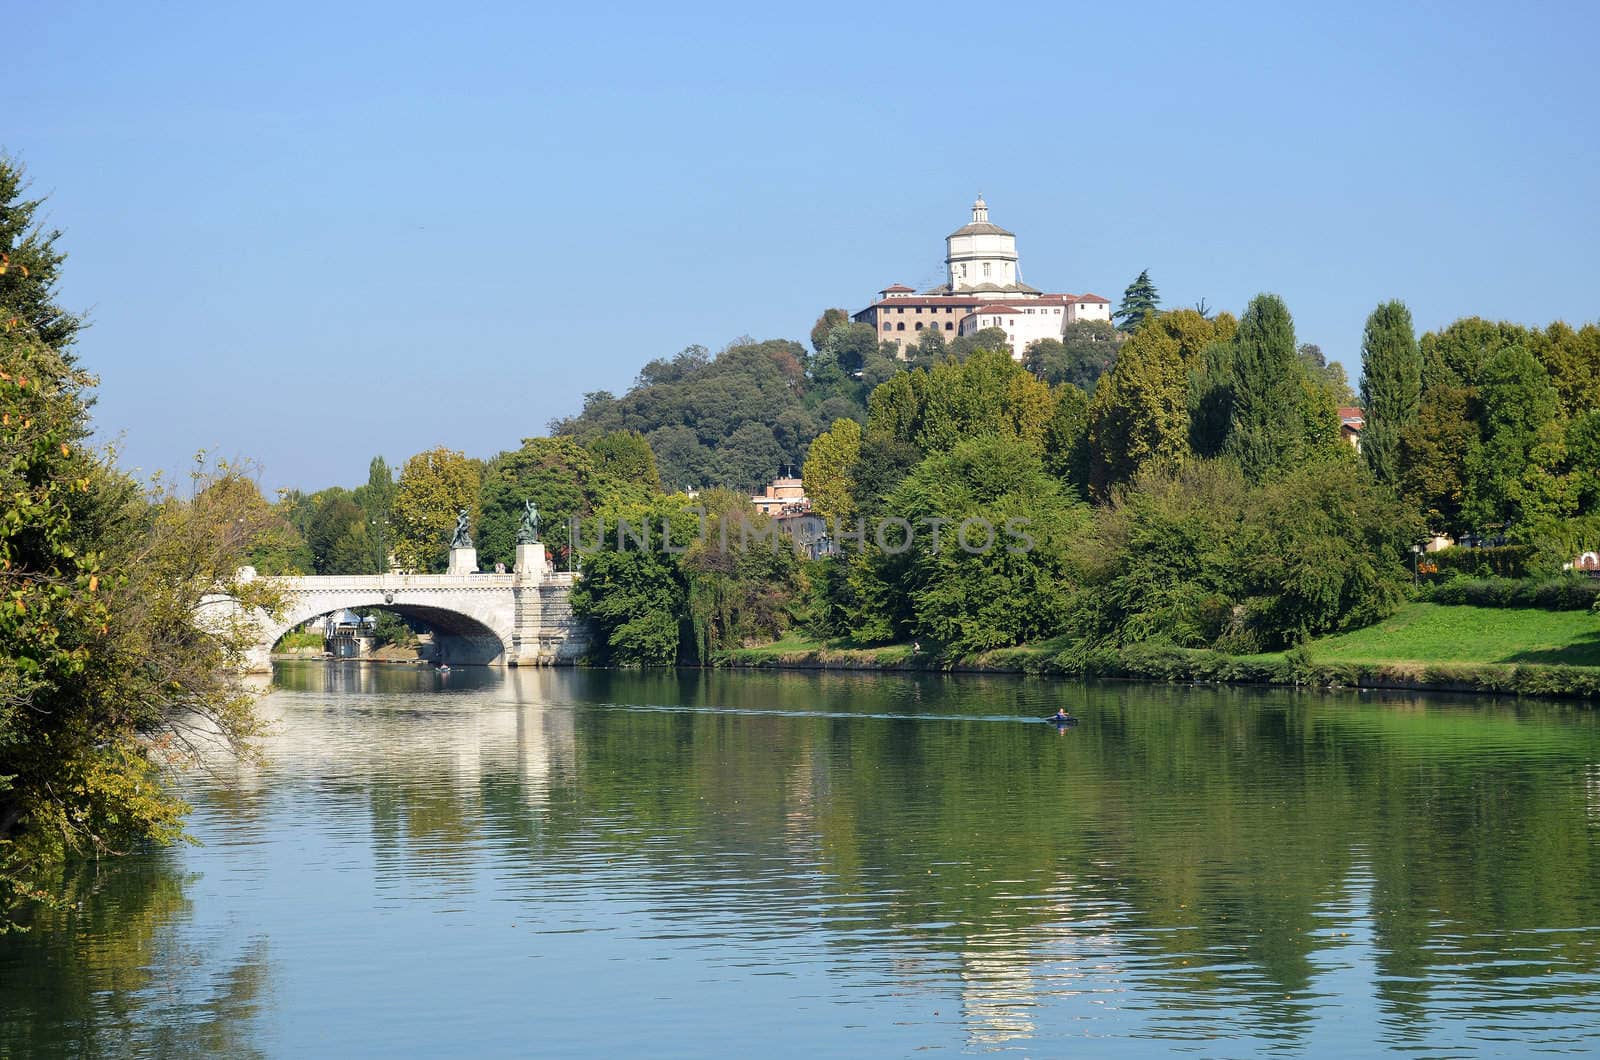 River Po in Torino by artofphoto